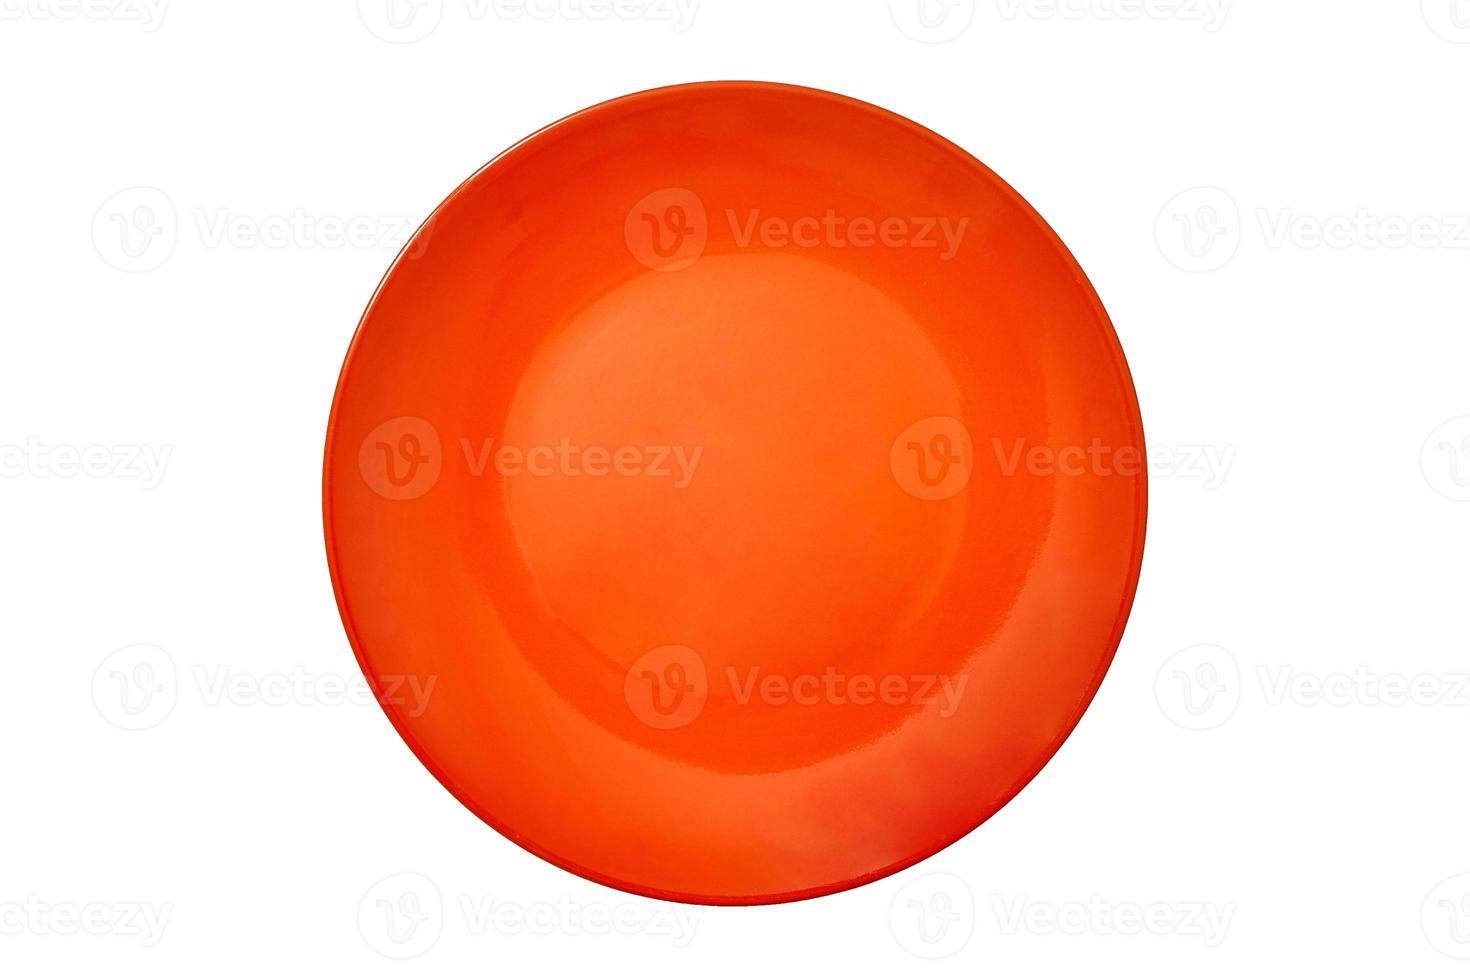 een lege grote ronde keramische plaat van fel oranje kleur voor voedsel op een witte geïsoleerde achtergrond wordt gefotografeerd vanuit het bovenaanzicht. conceptlay-out voor etikettering en voedselplaatsing. model. plat liggen. foto